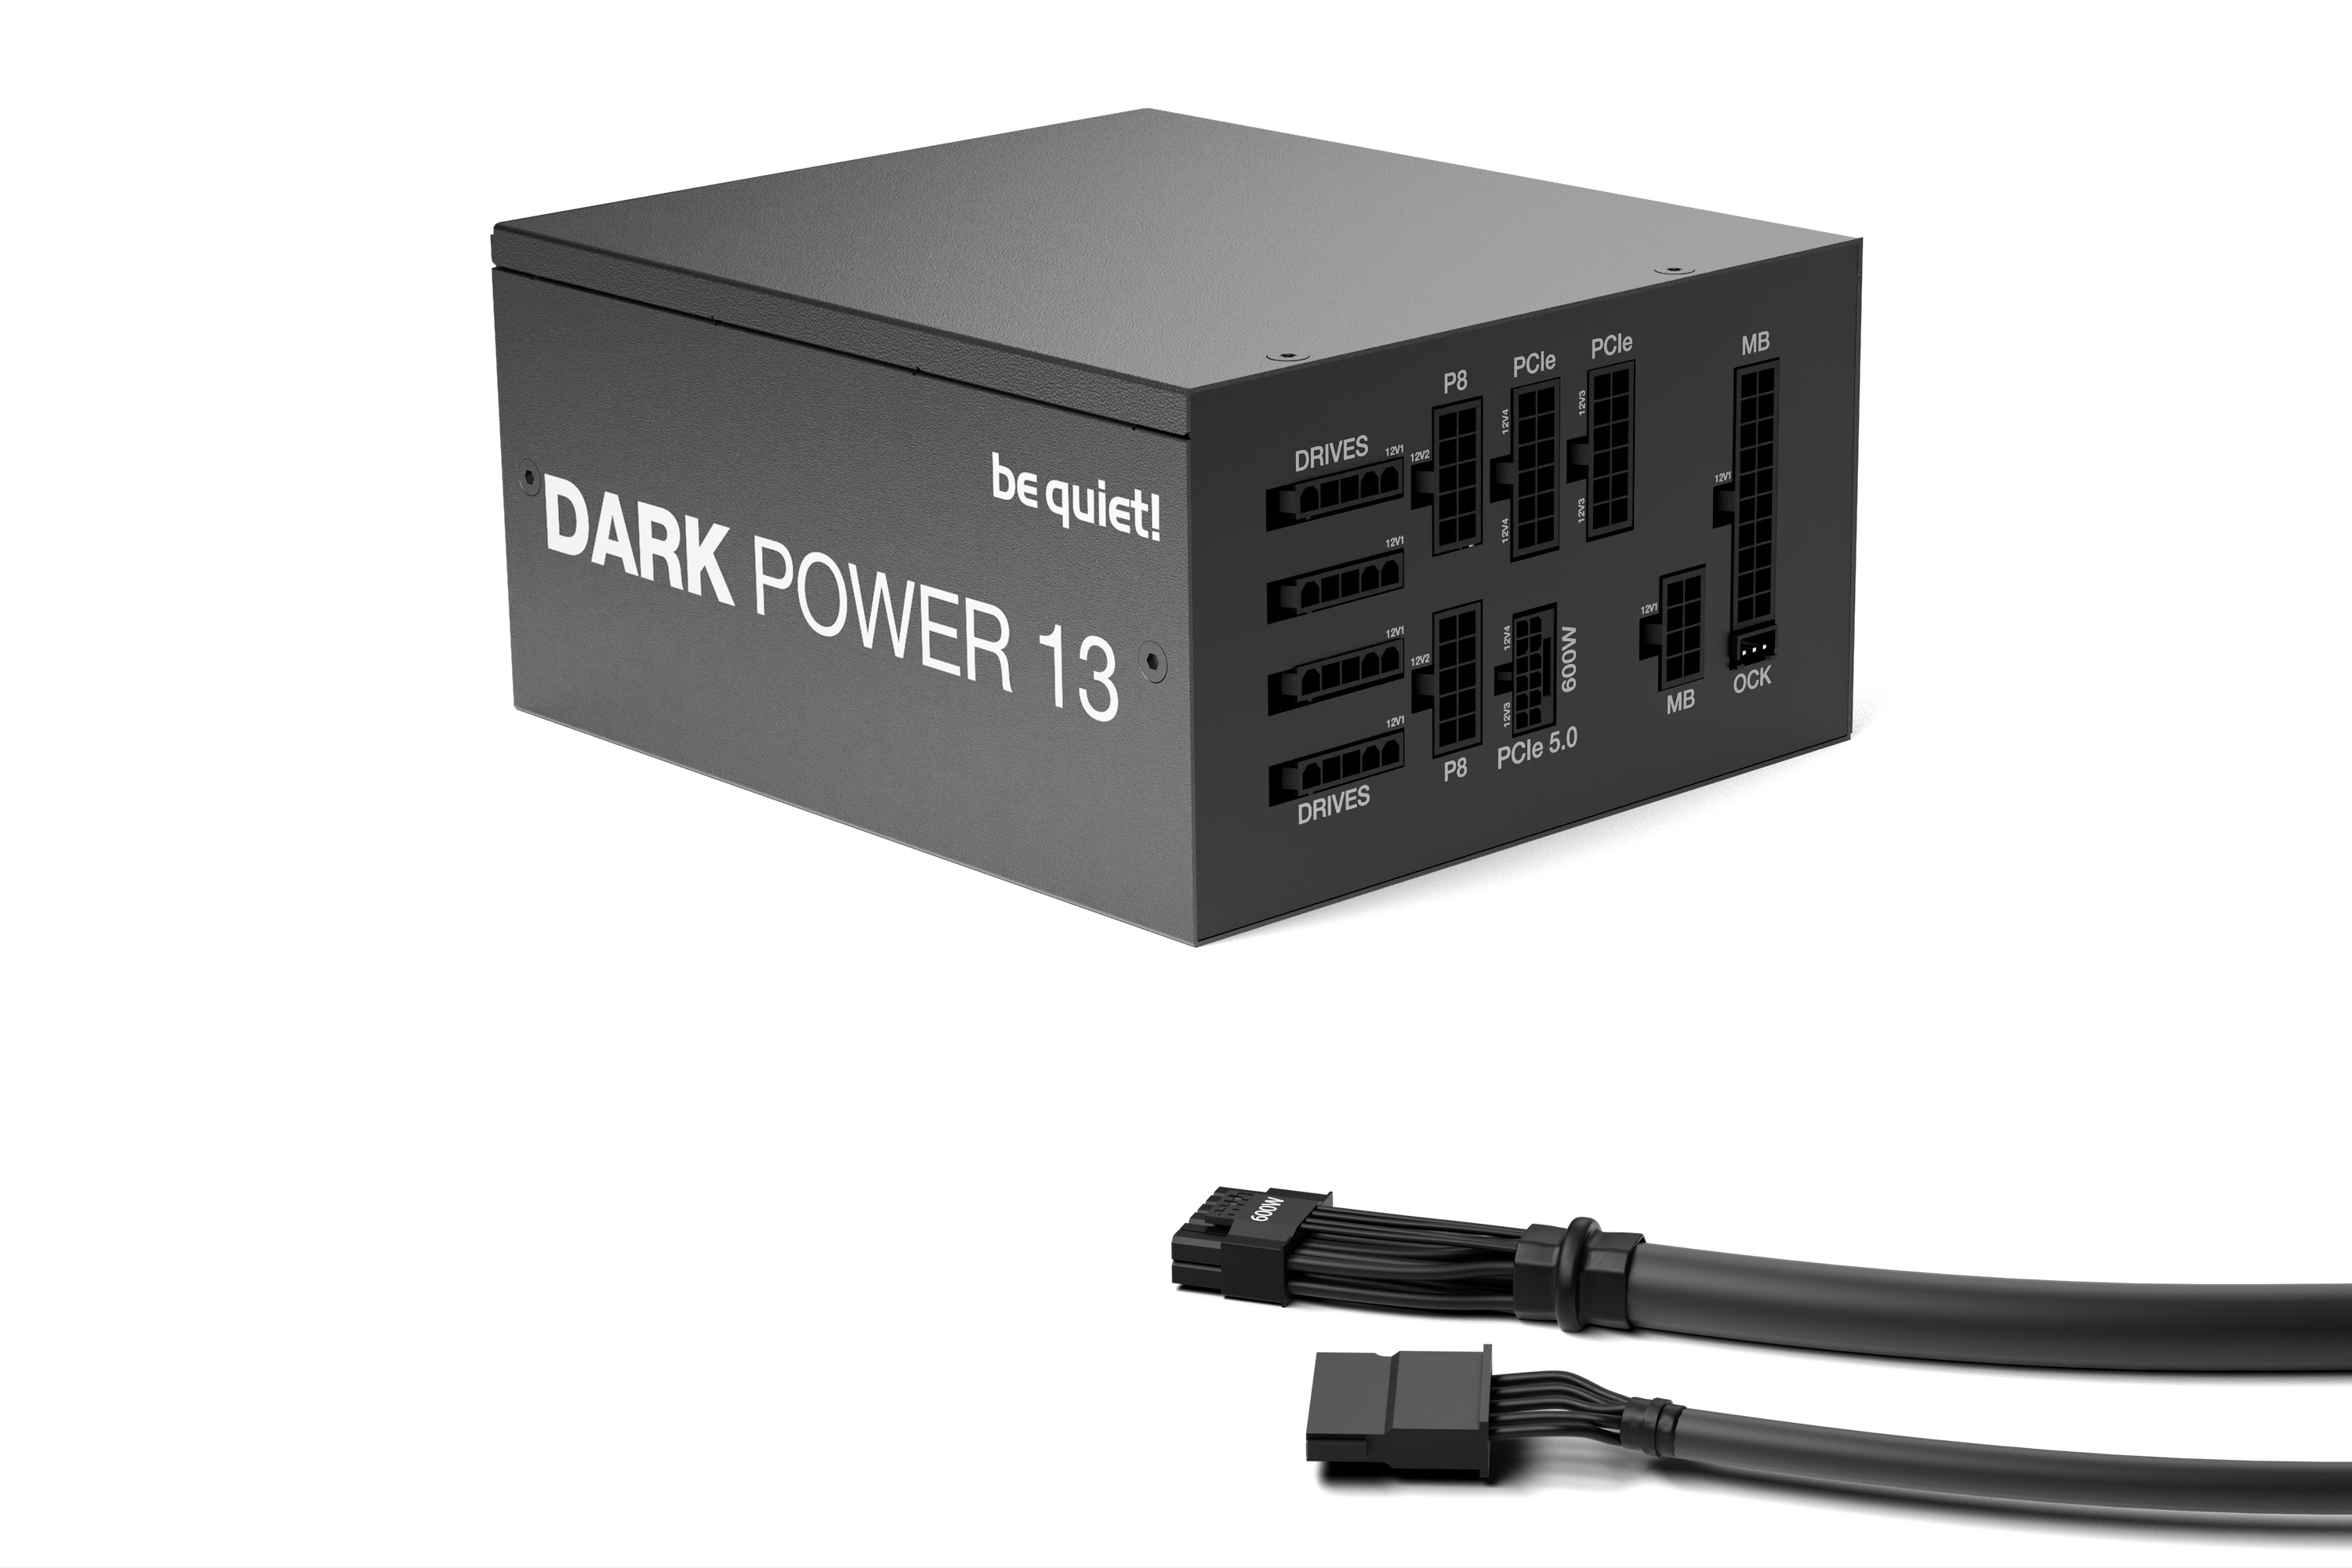   850W be quiet! Dark Power 13 (BN334)